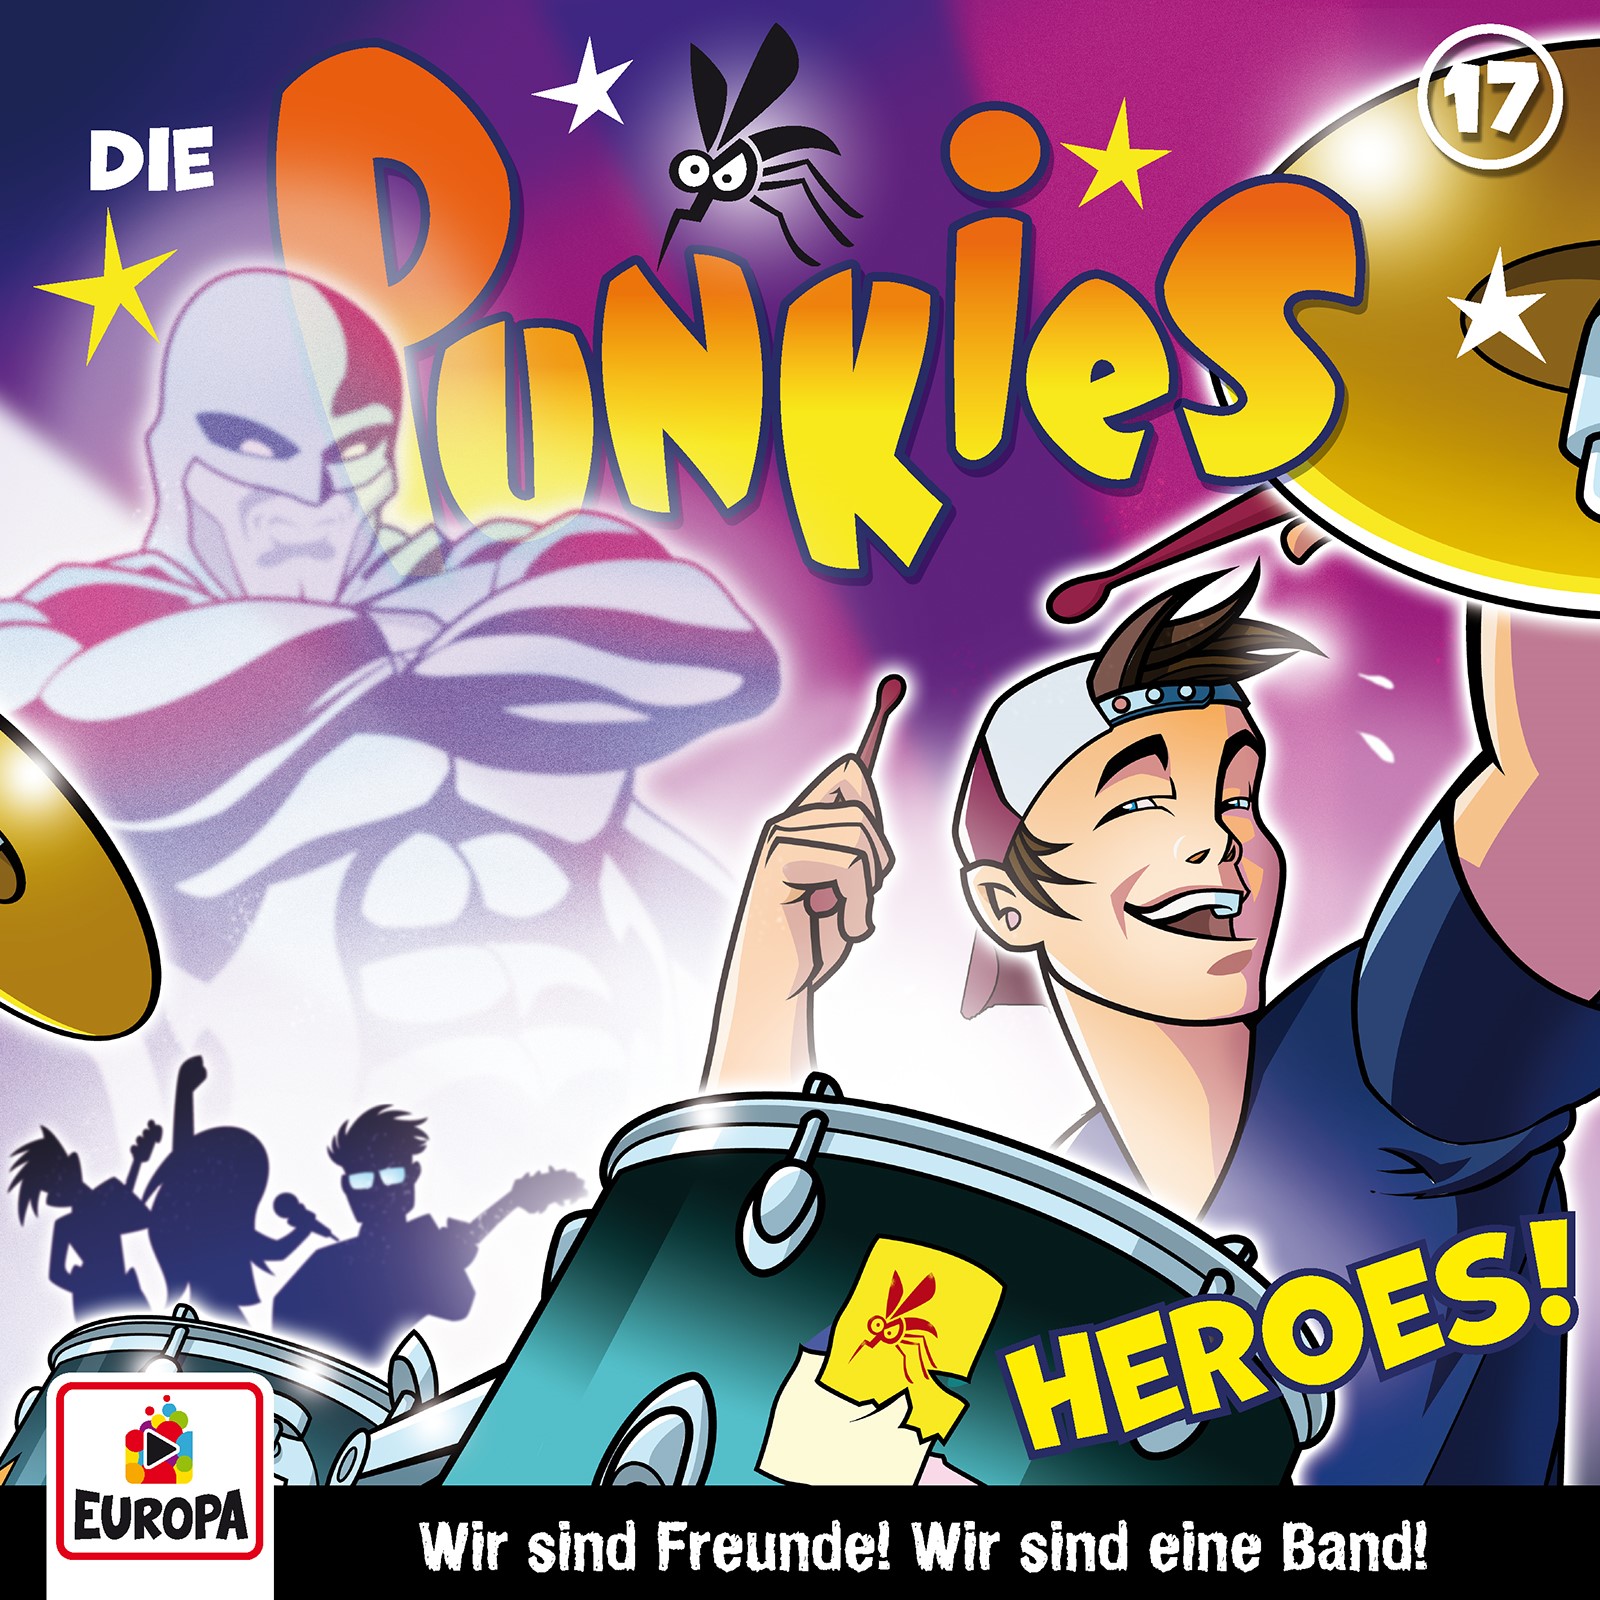 Die Punkies : Heroes!